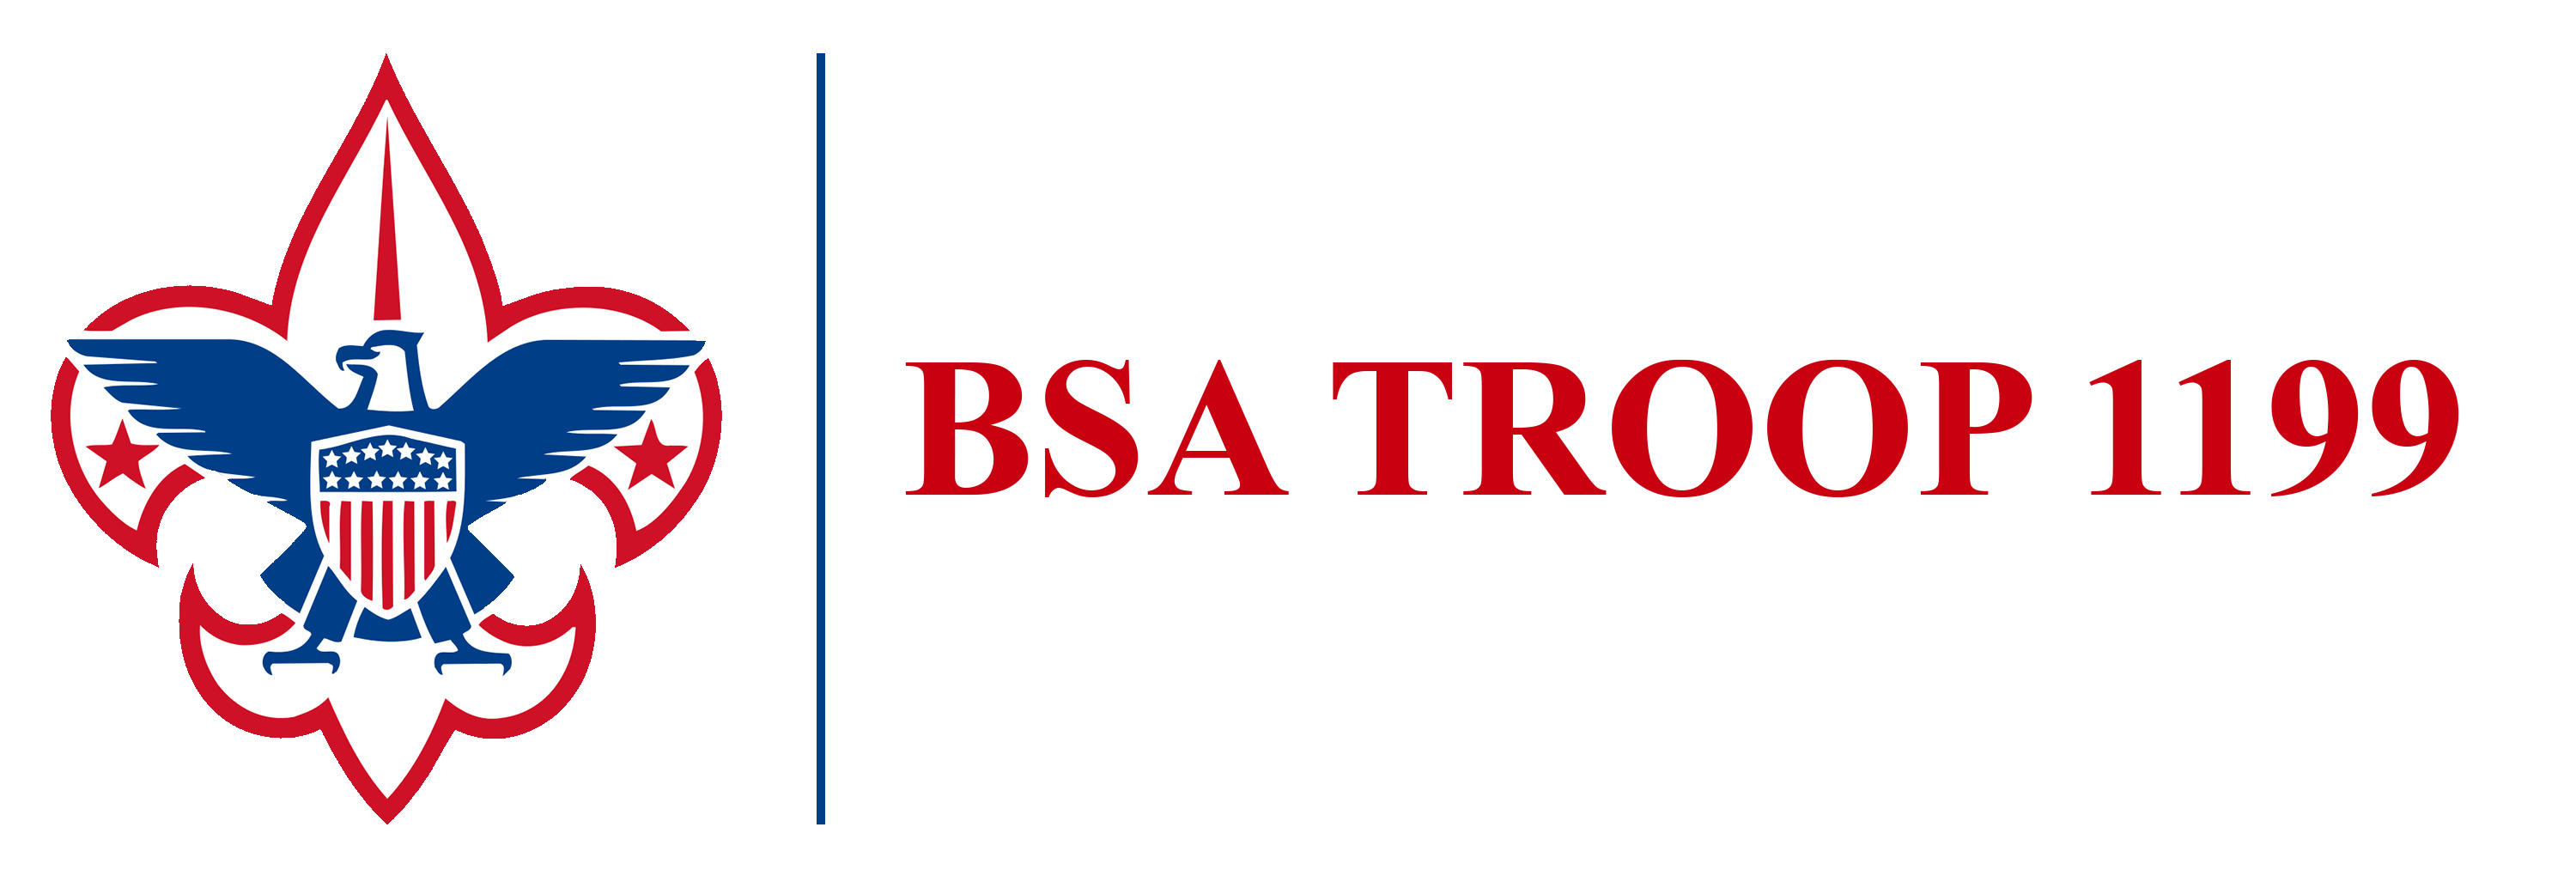 BSA Troop 1199